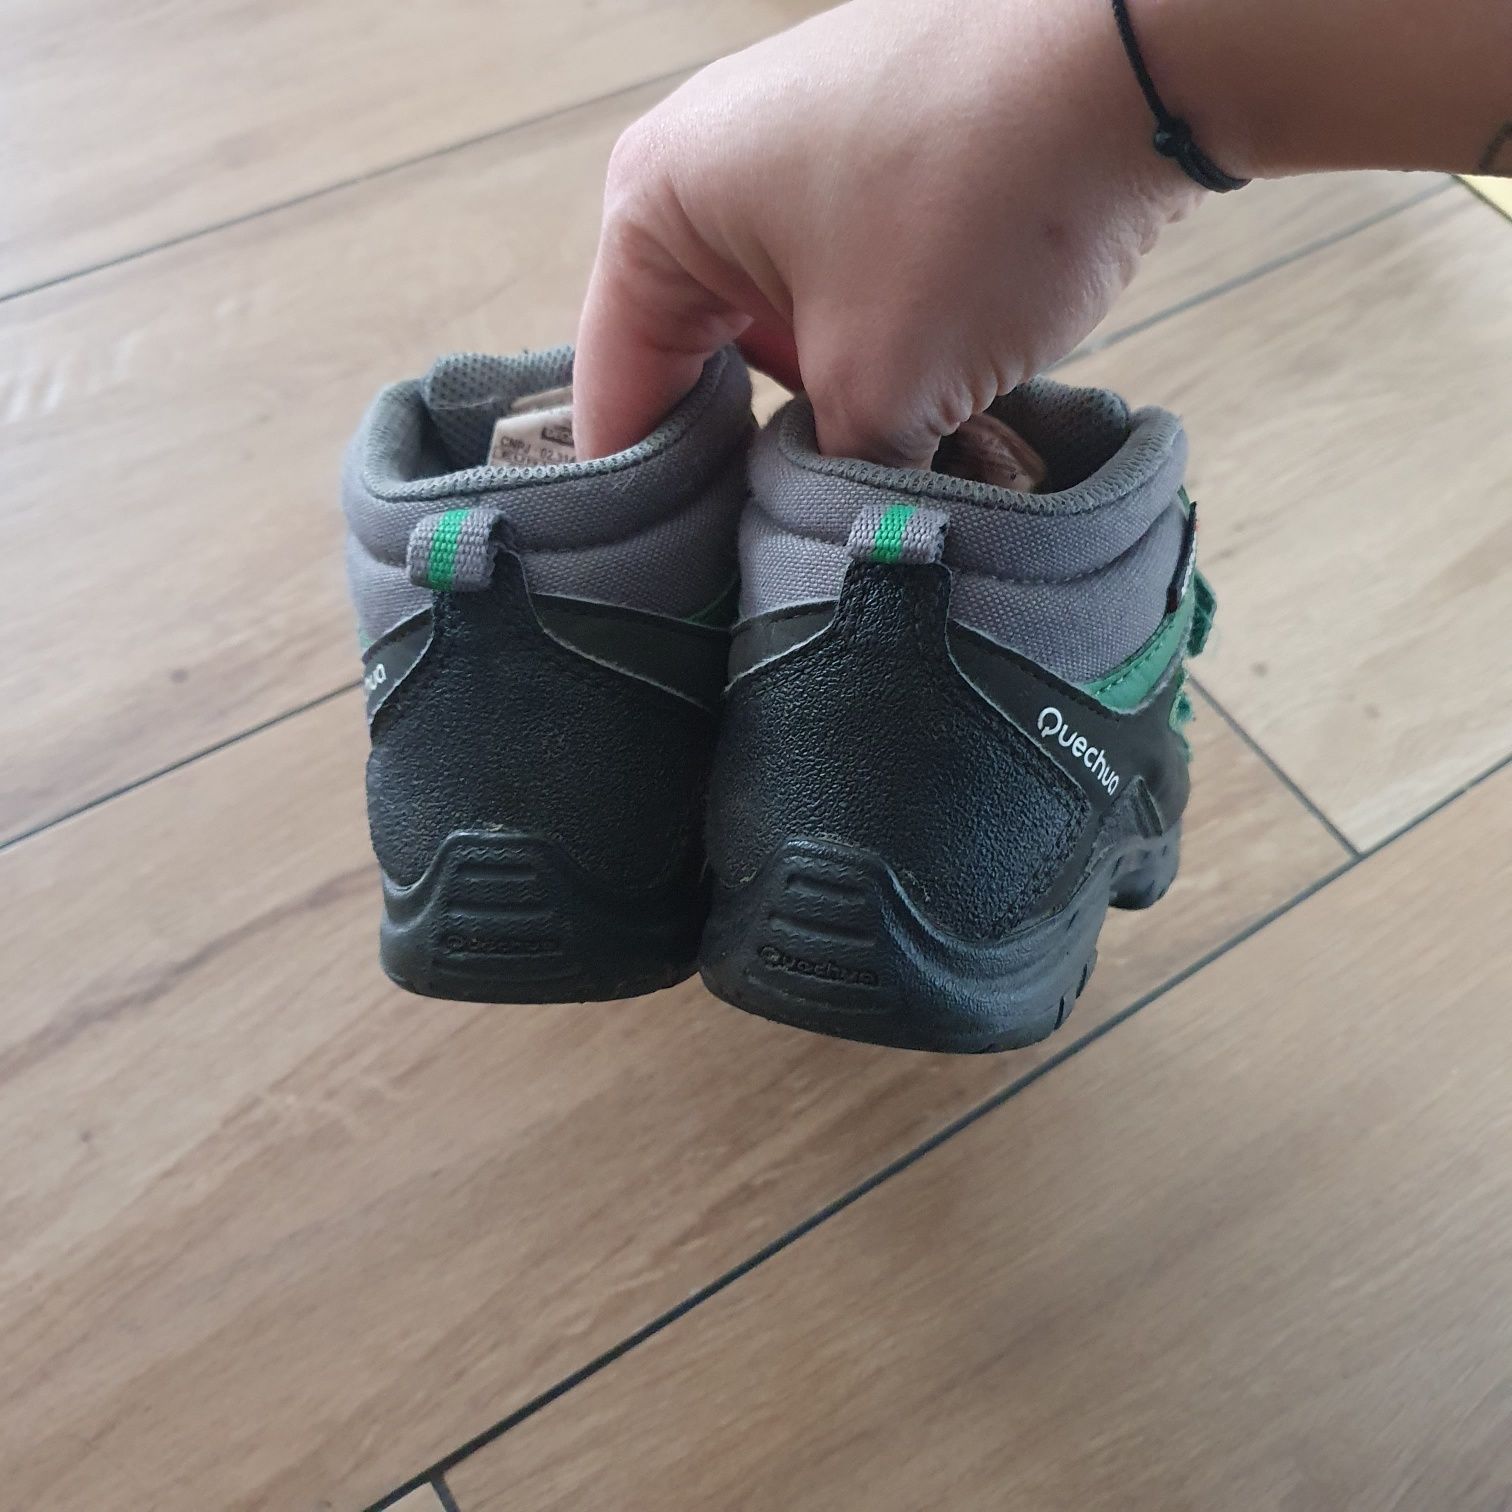 Decathlon buty dla dzieci trekingowe ,wodoodporne z membraną r.29 18,5